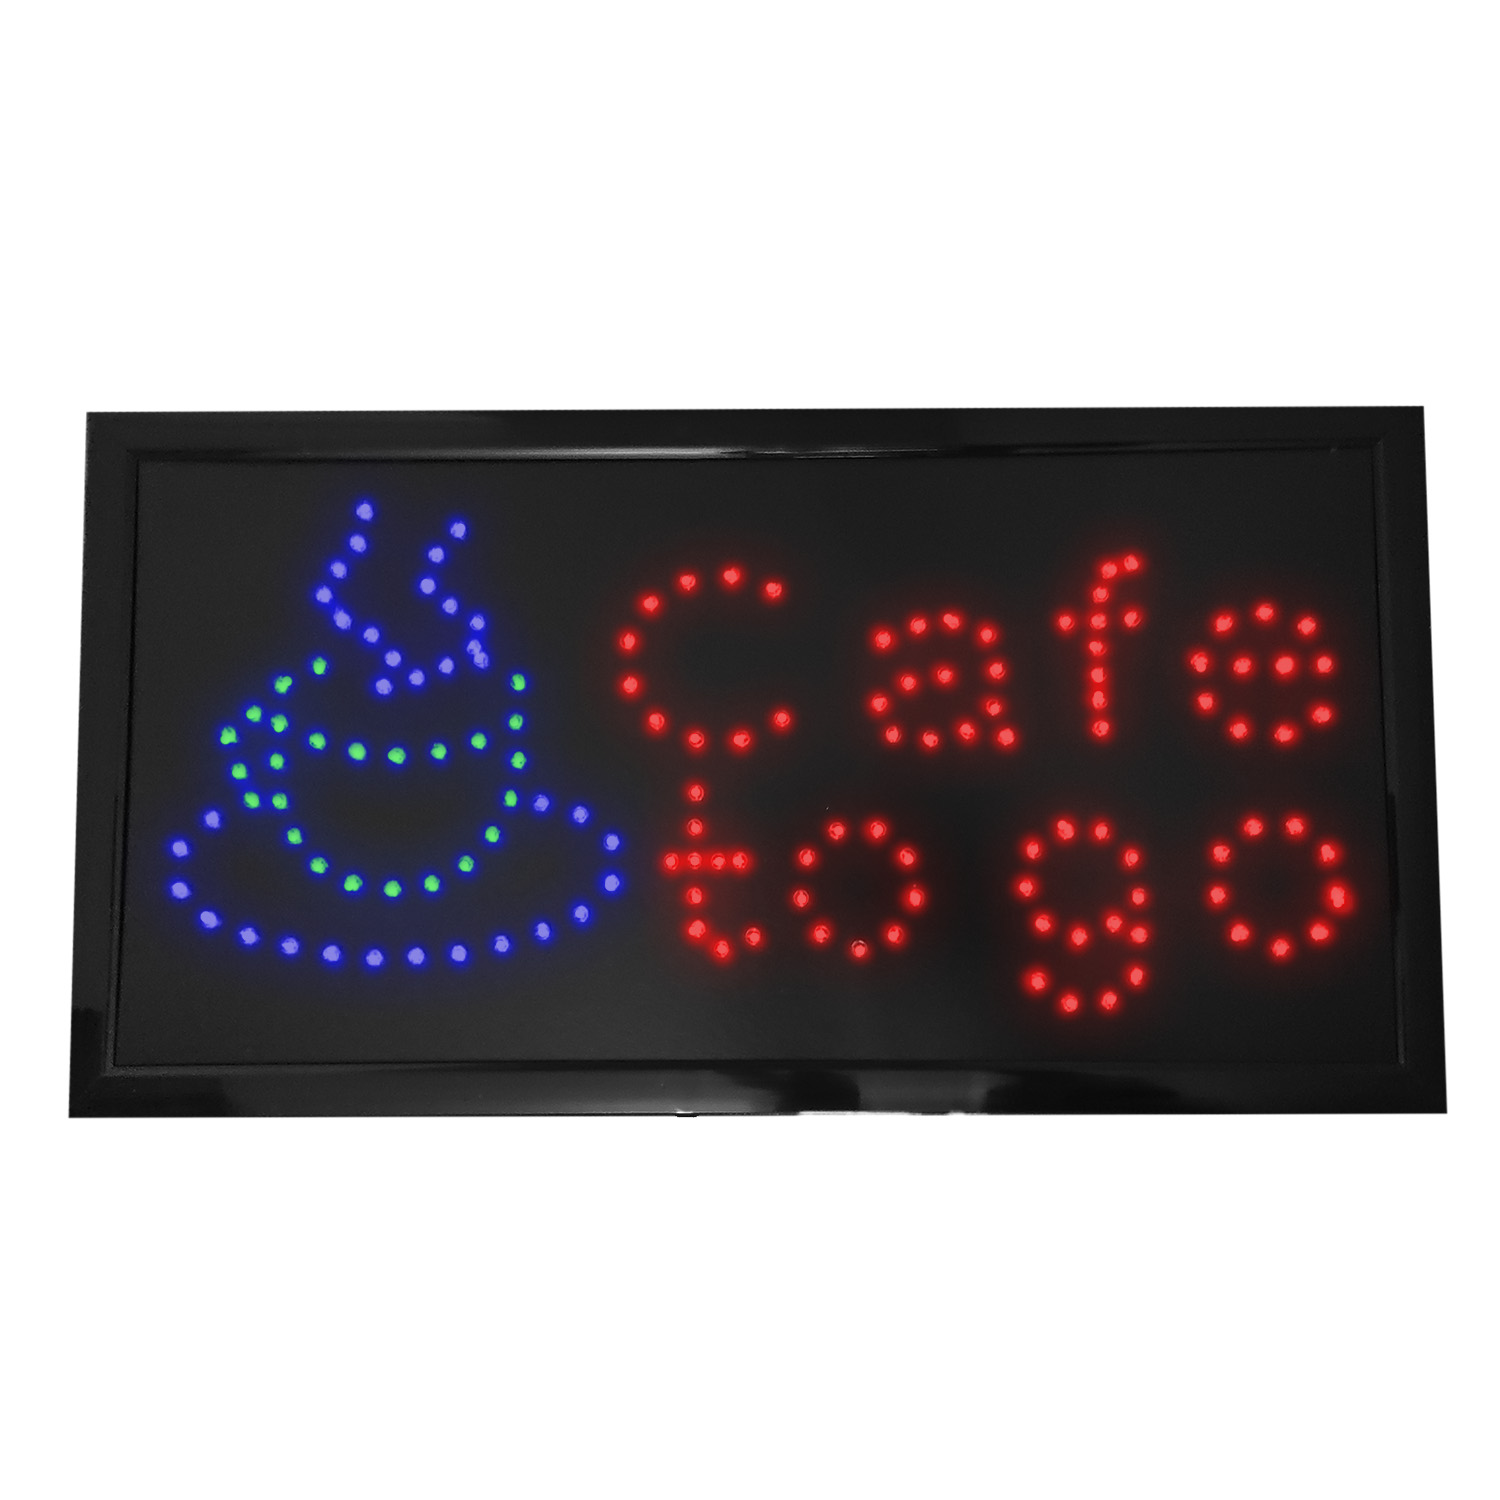 DE LED Schild Display Leuchtreklame Werbung Sign Neon GEÖFFNET Bar Open Reklame 